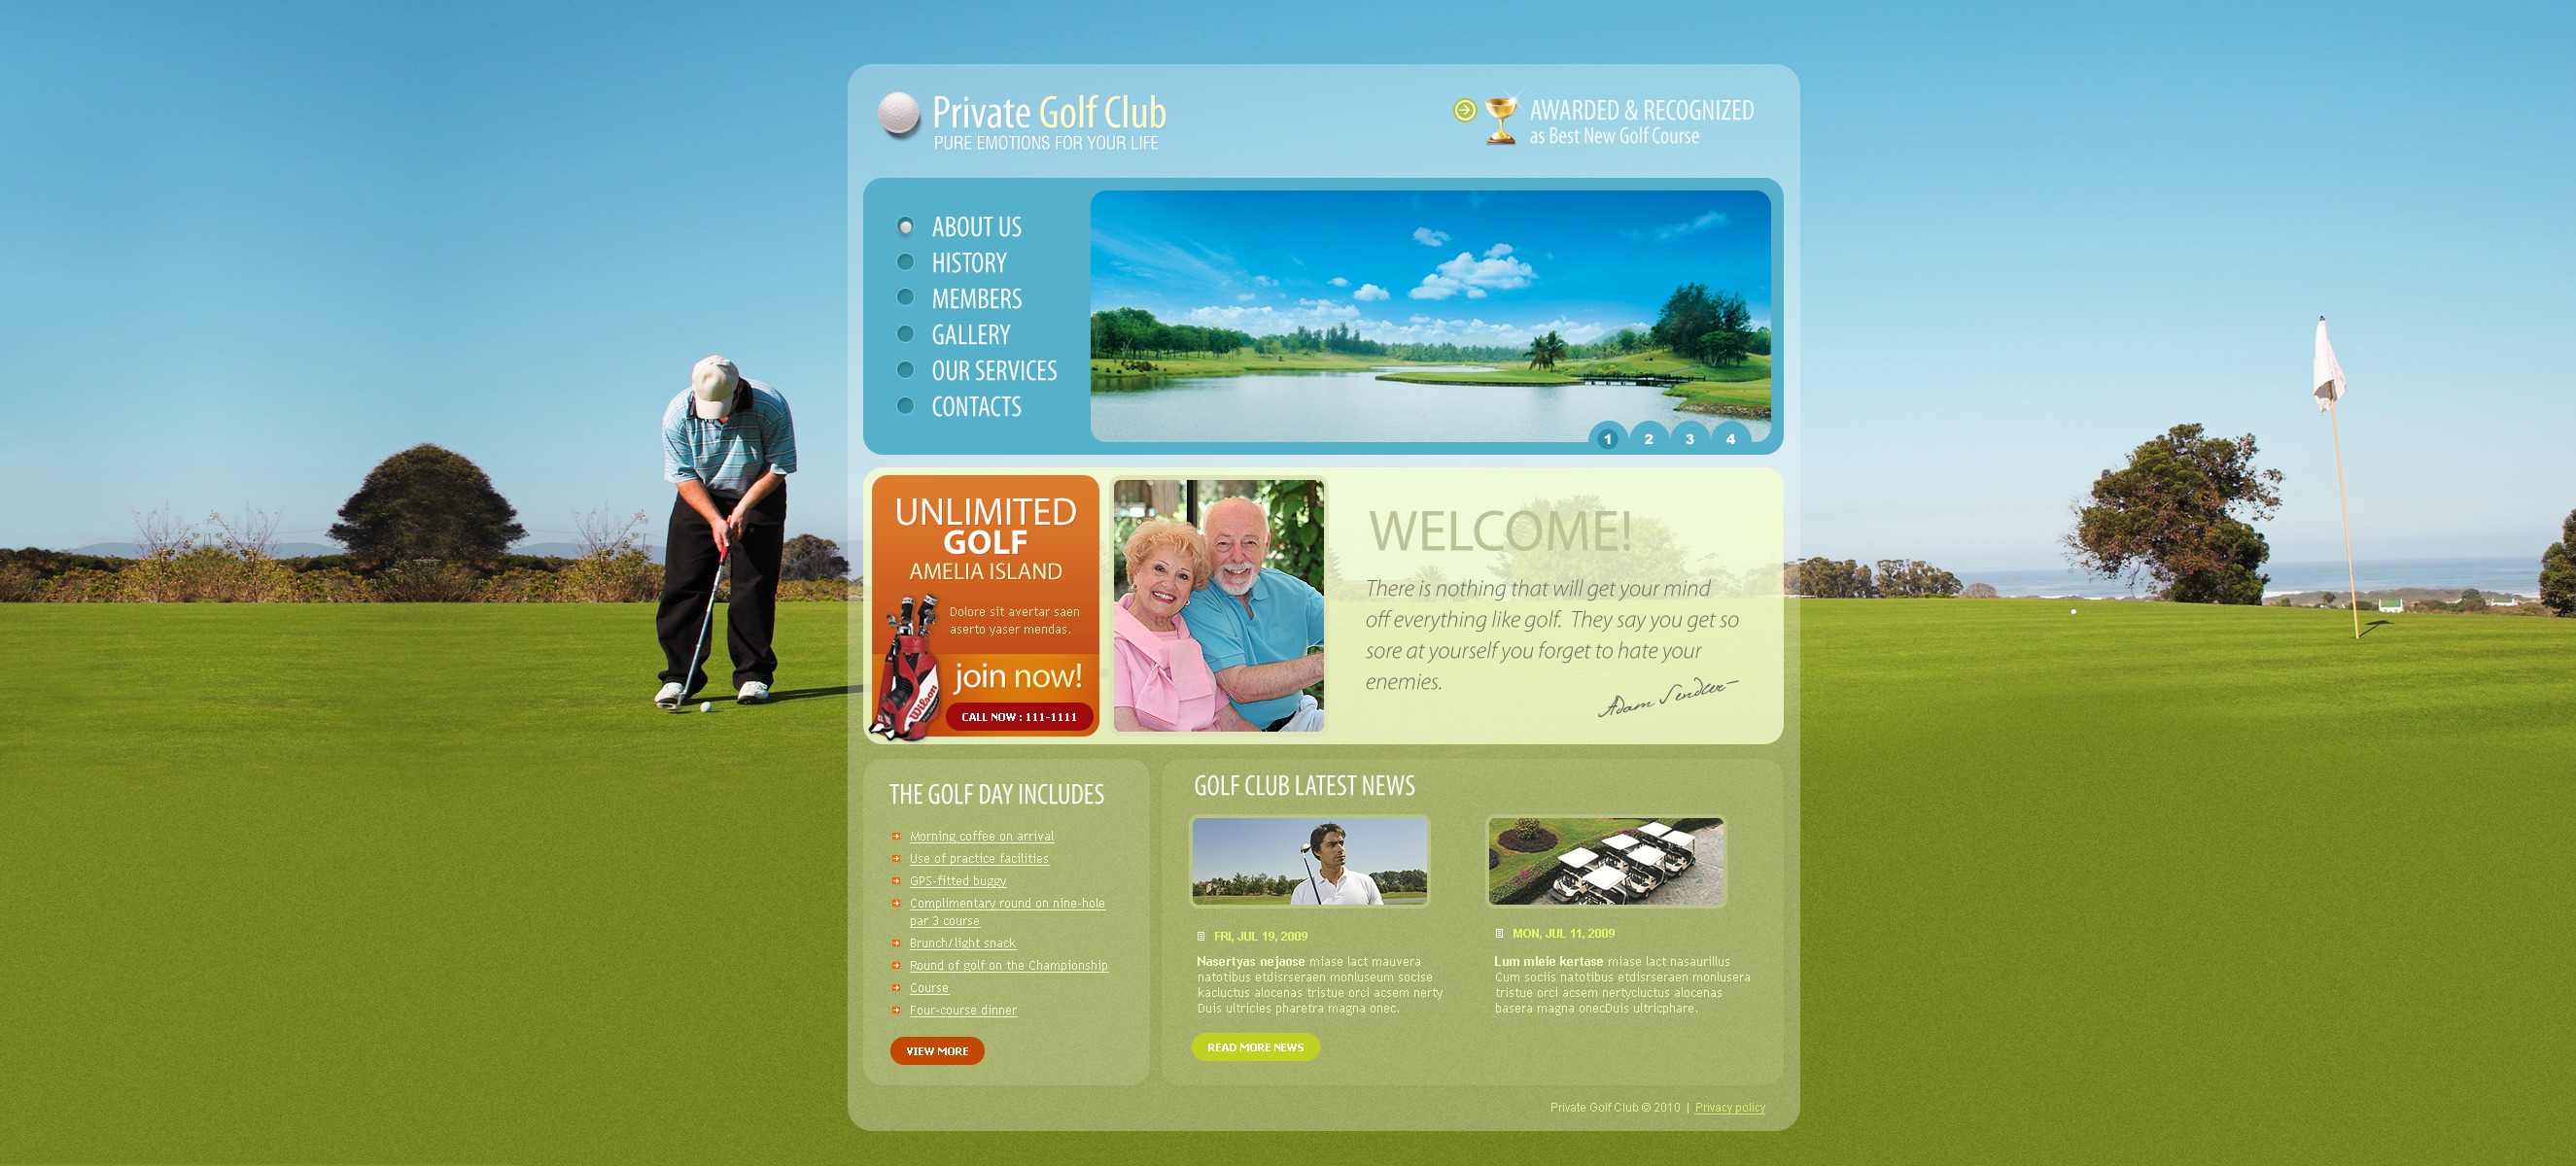 Golf Website Template #28912